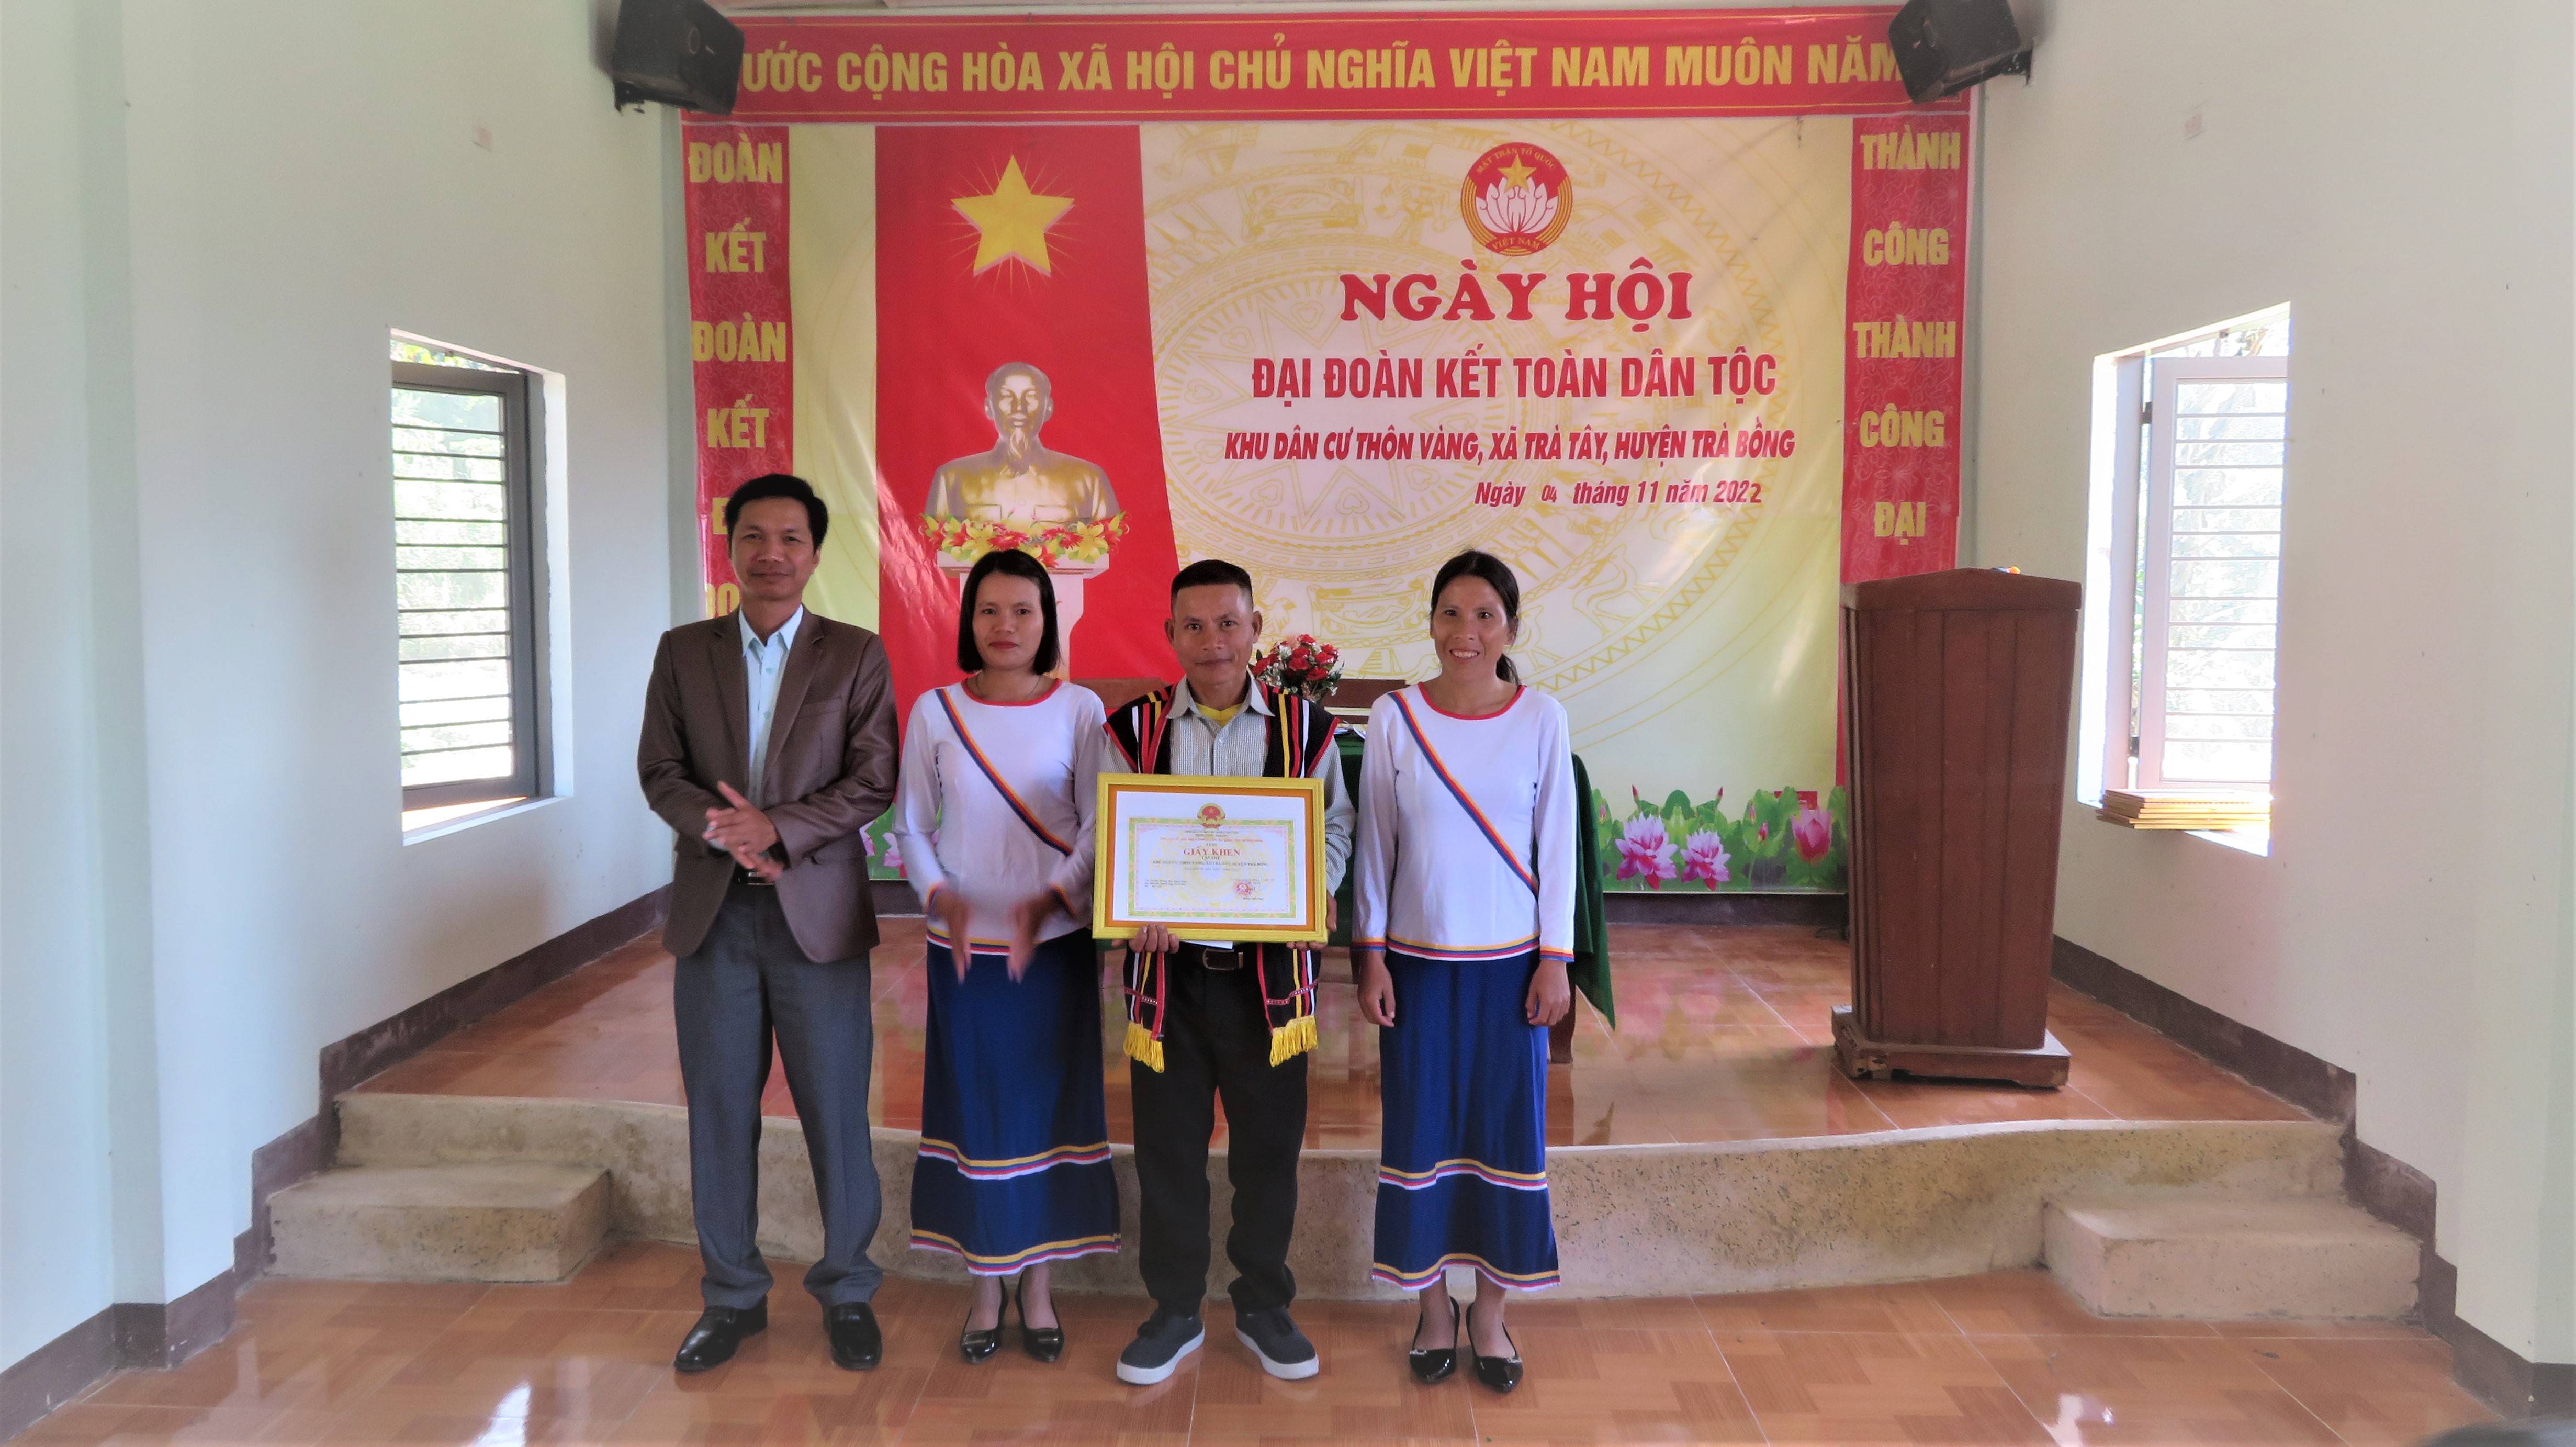 Chủ tịch UBND huyện Hoàng Anh Ngọc dự Ngày hội Đại đoàn kết toàn dân tộc tại Thôn Vàng, xã Trà Tây